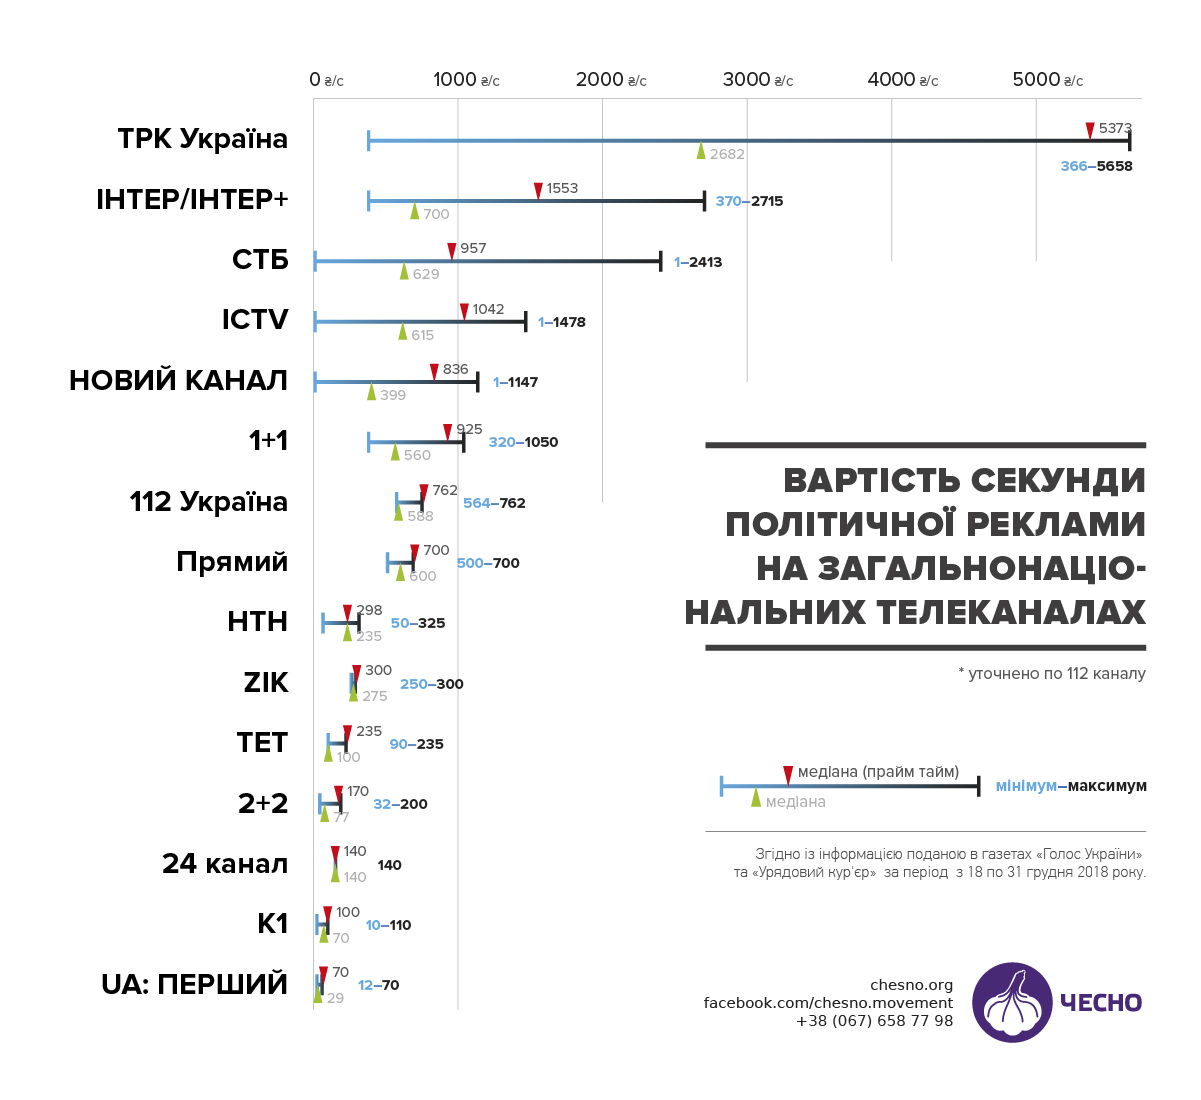 Ахметов обогатится: сколько стоит политреклама на украинских телеканалах - фото 167856